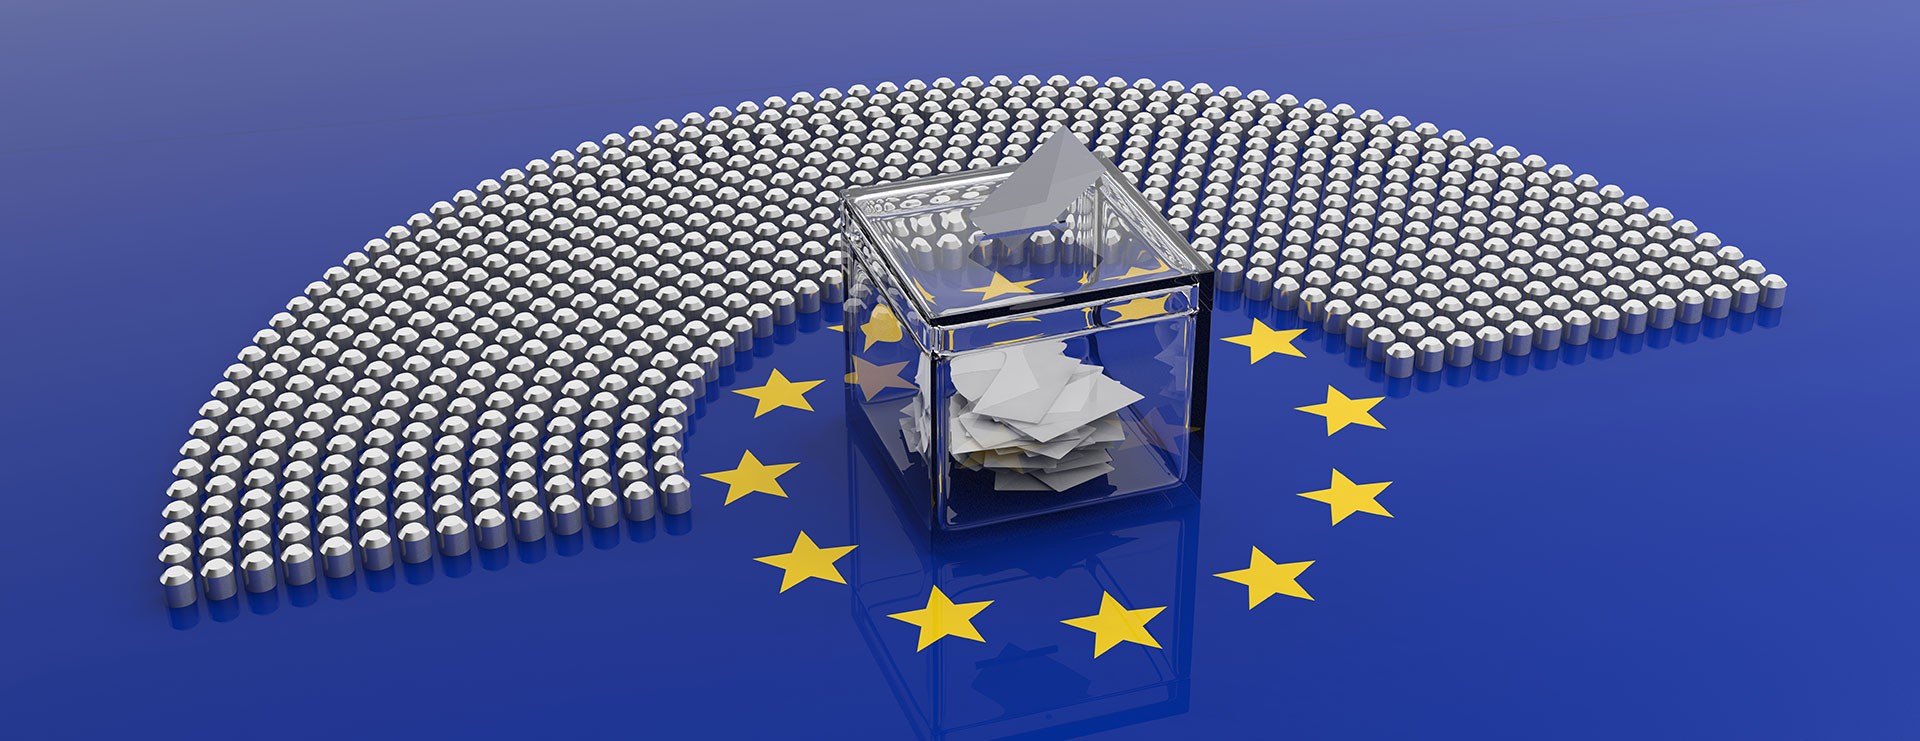 Les ministres européens ont définitivement entériné la réforme du droit d’auteur